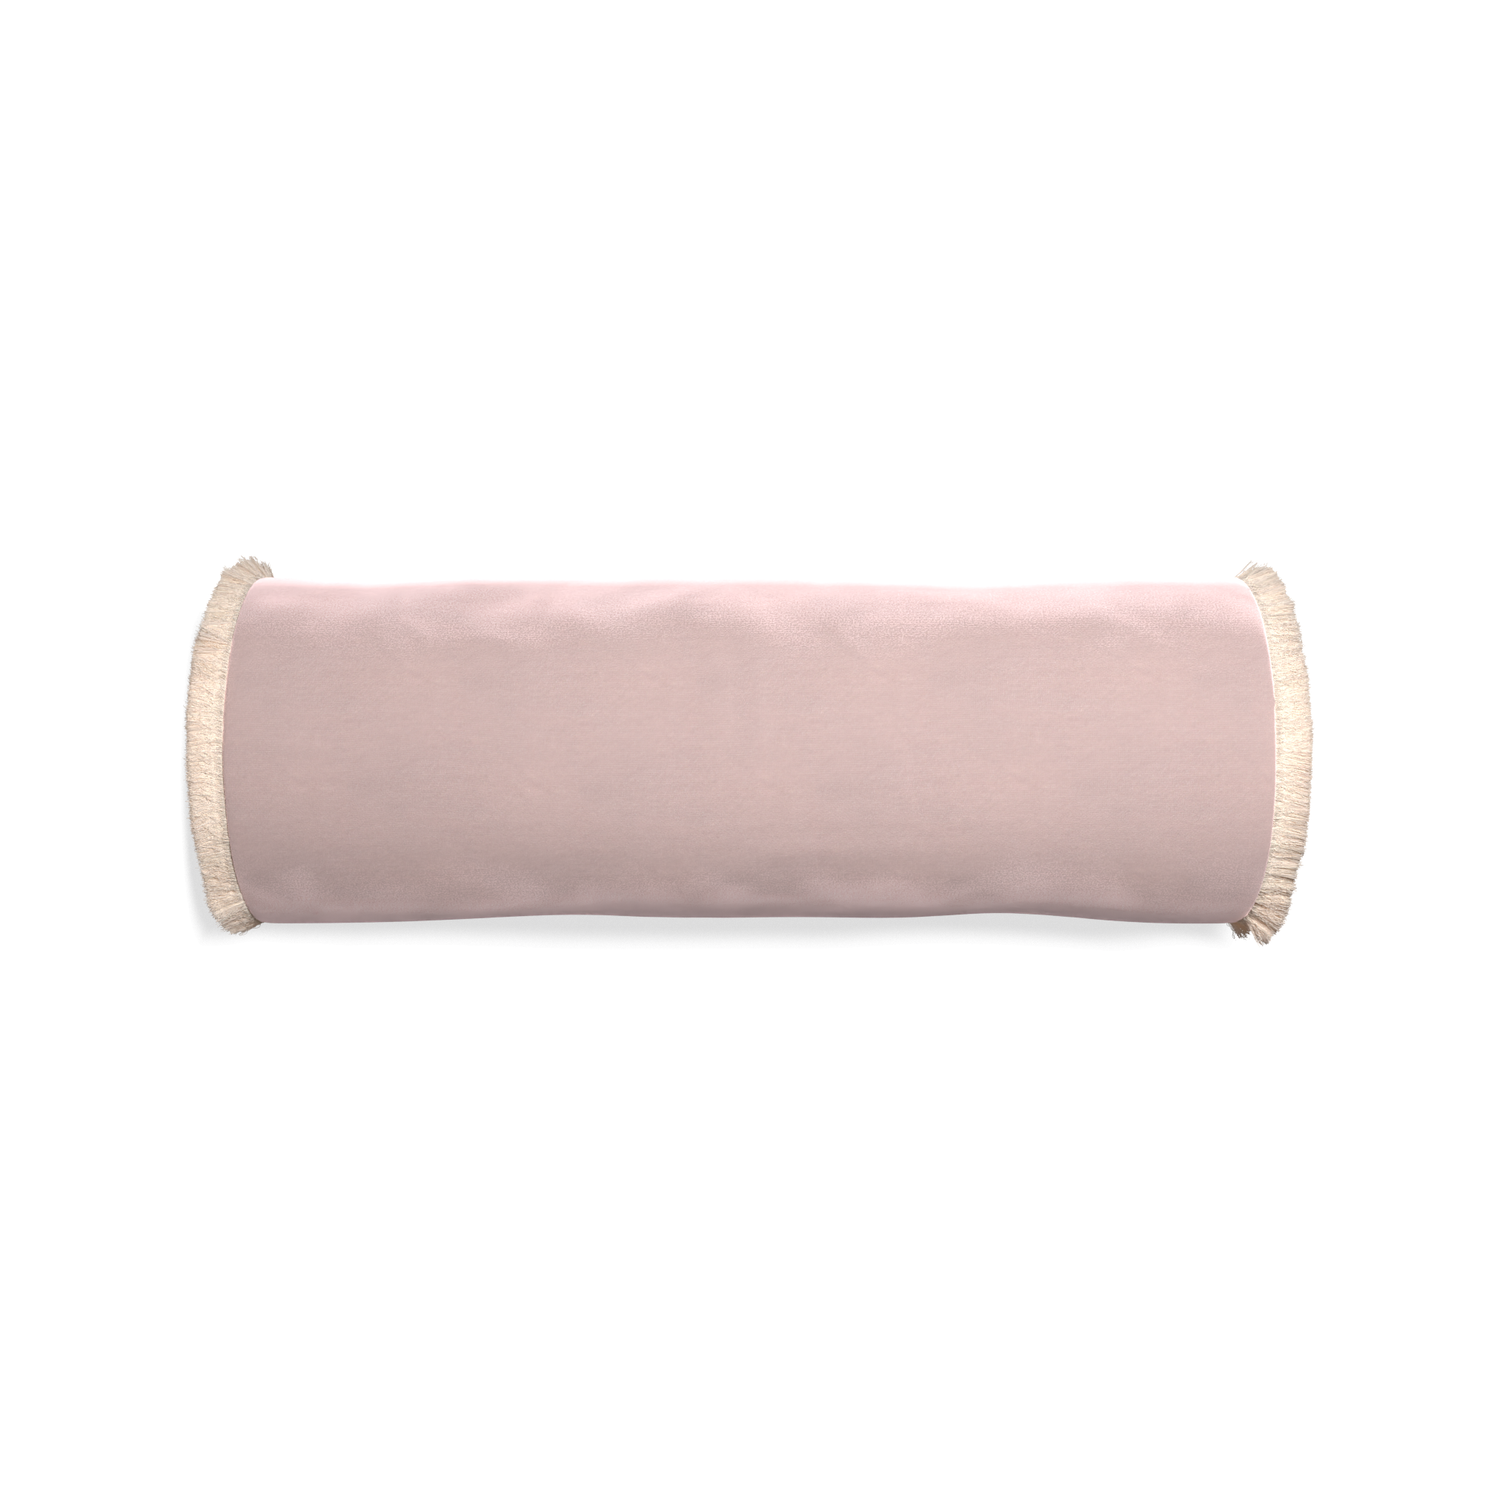 Bolster rose velvet custom pillow with cream fringe on white background